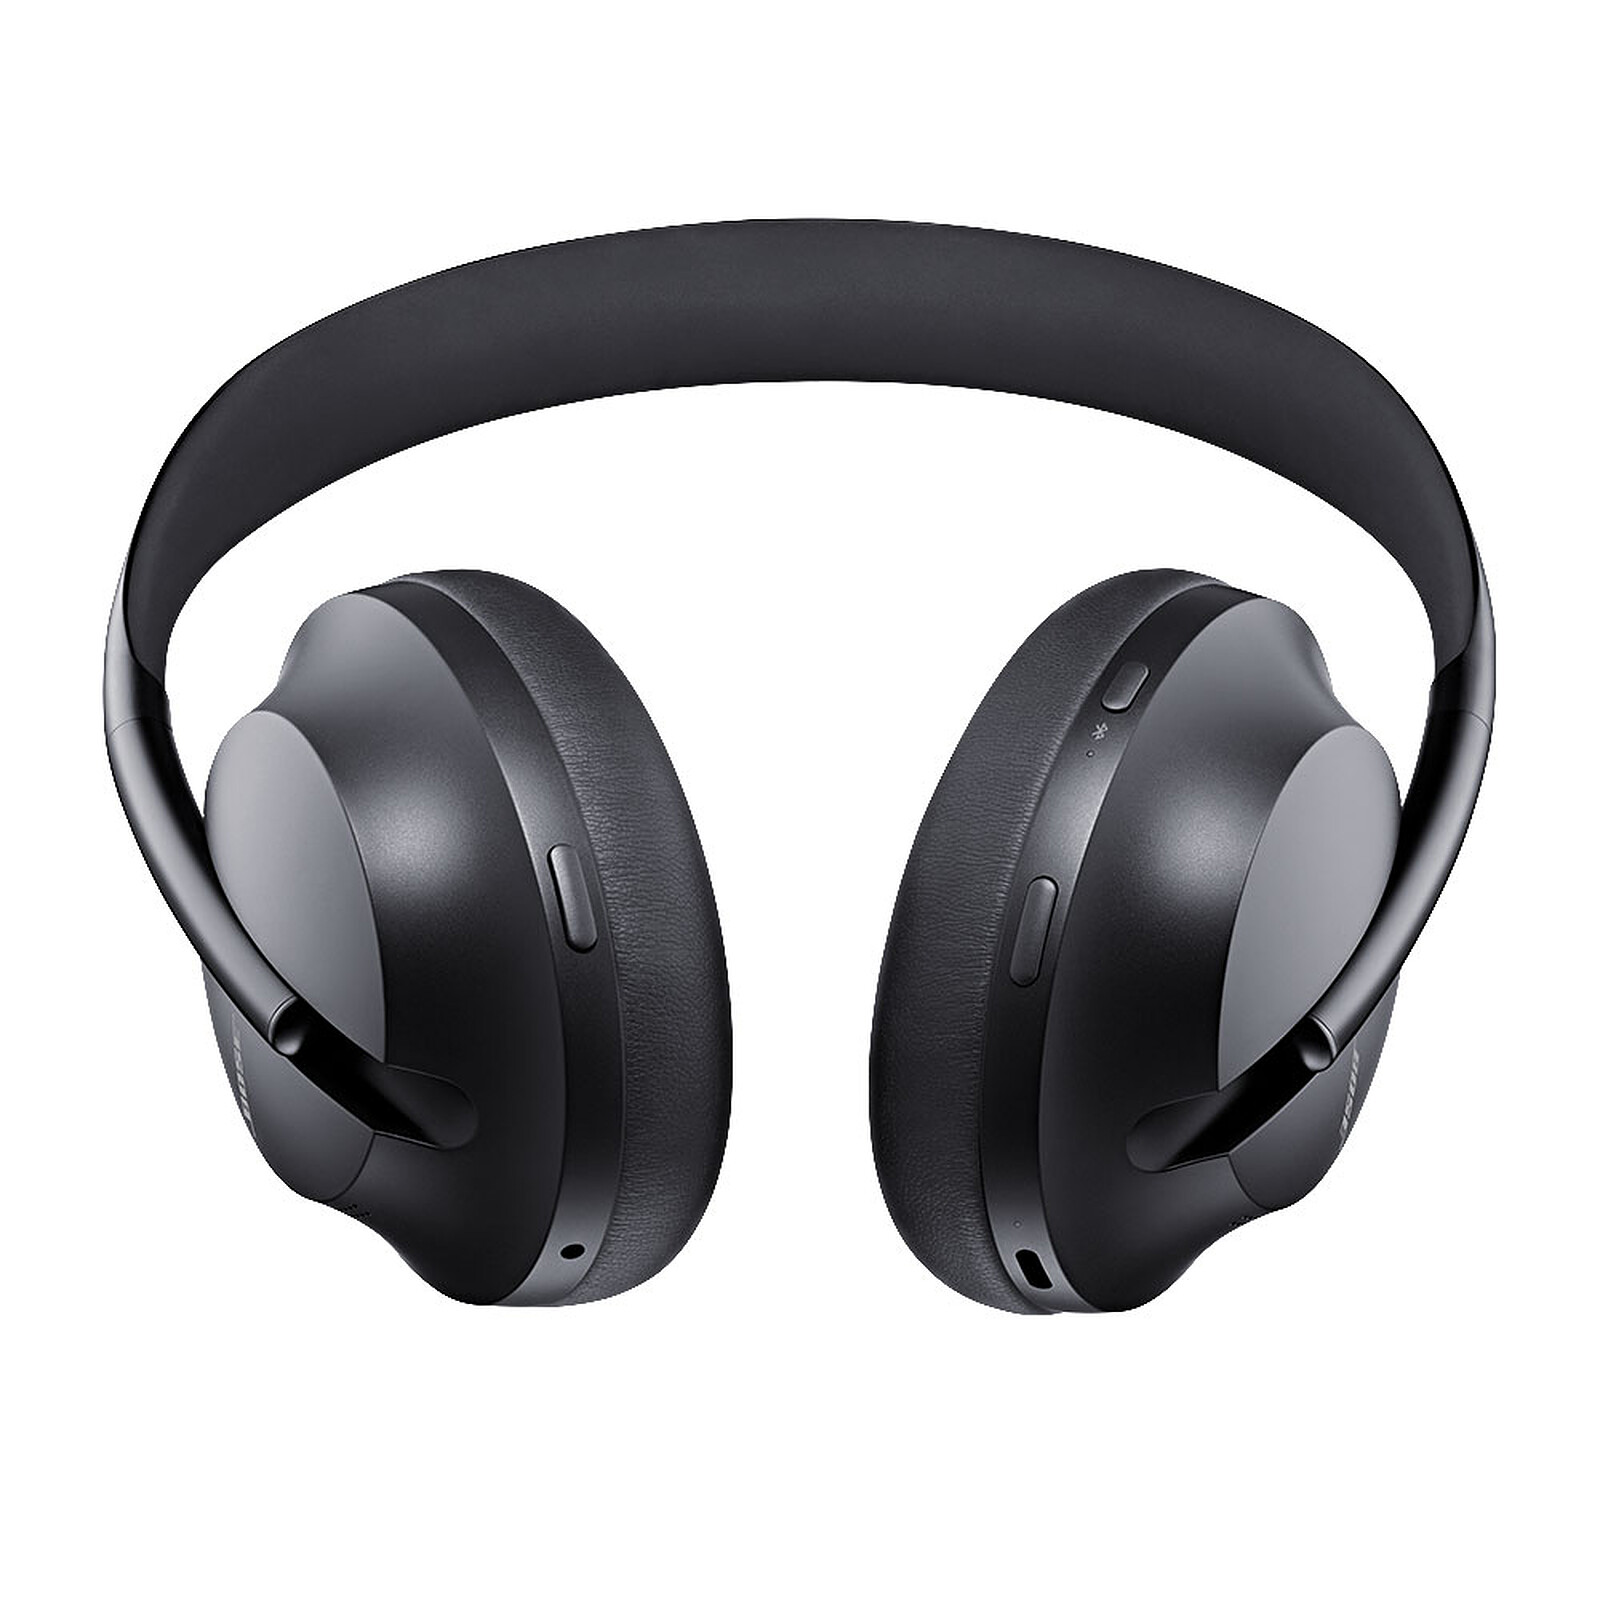 Nuevos Bose QuietComfort Earbuds: características, precio y ficha técnica